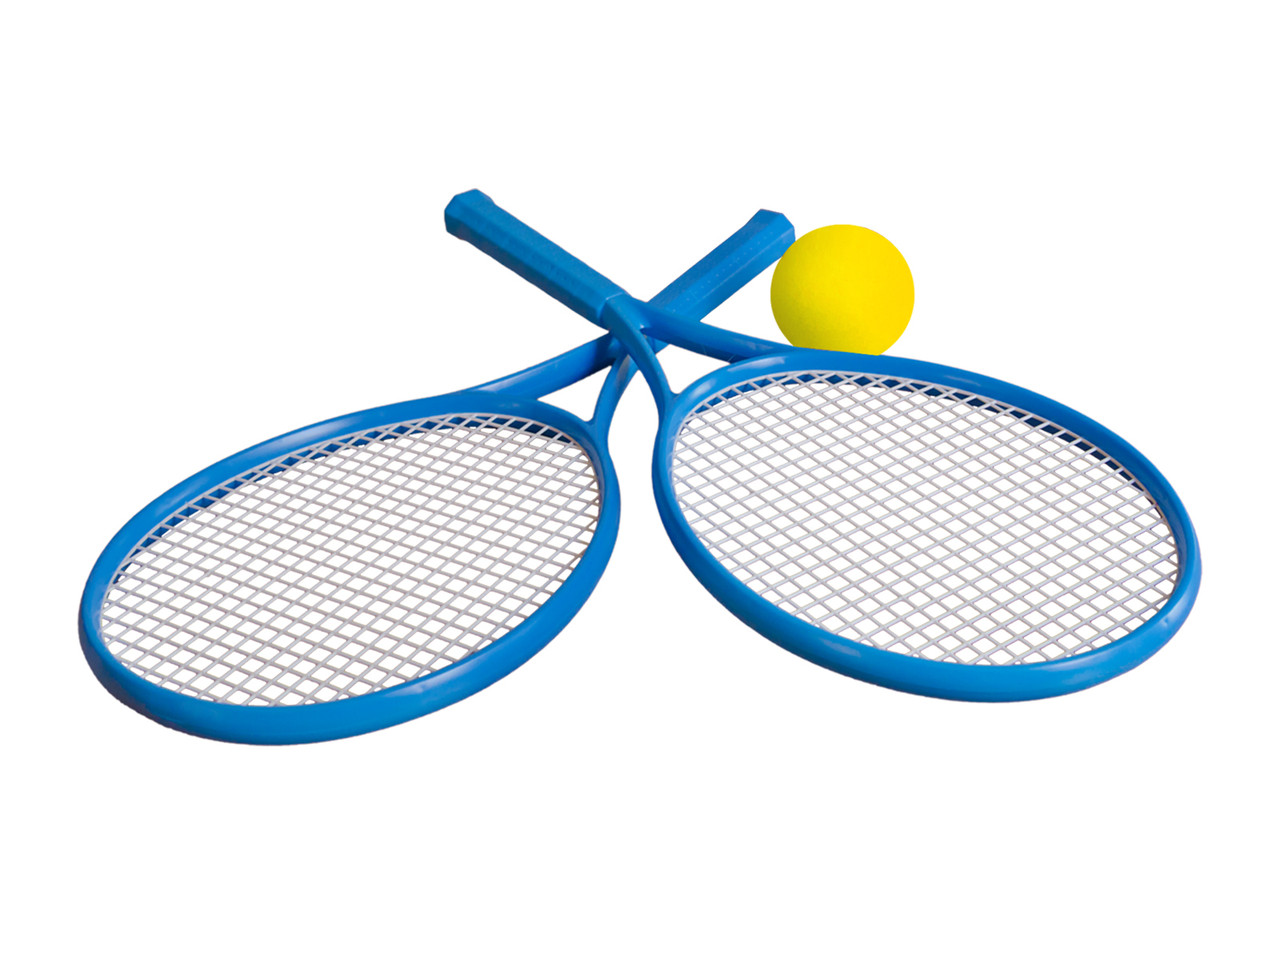 Дитячий набір для гри в теніс Технок (2957)